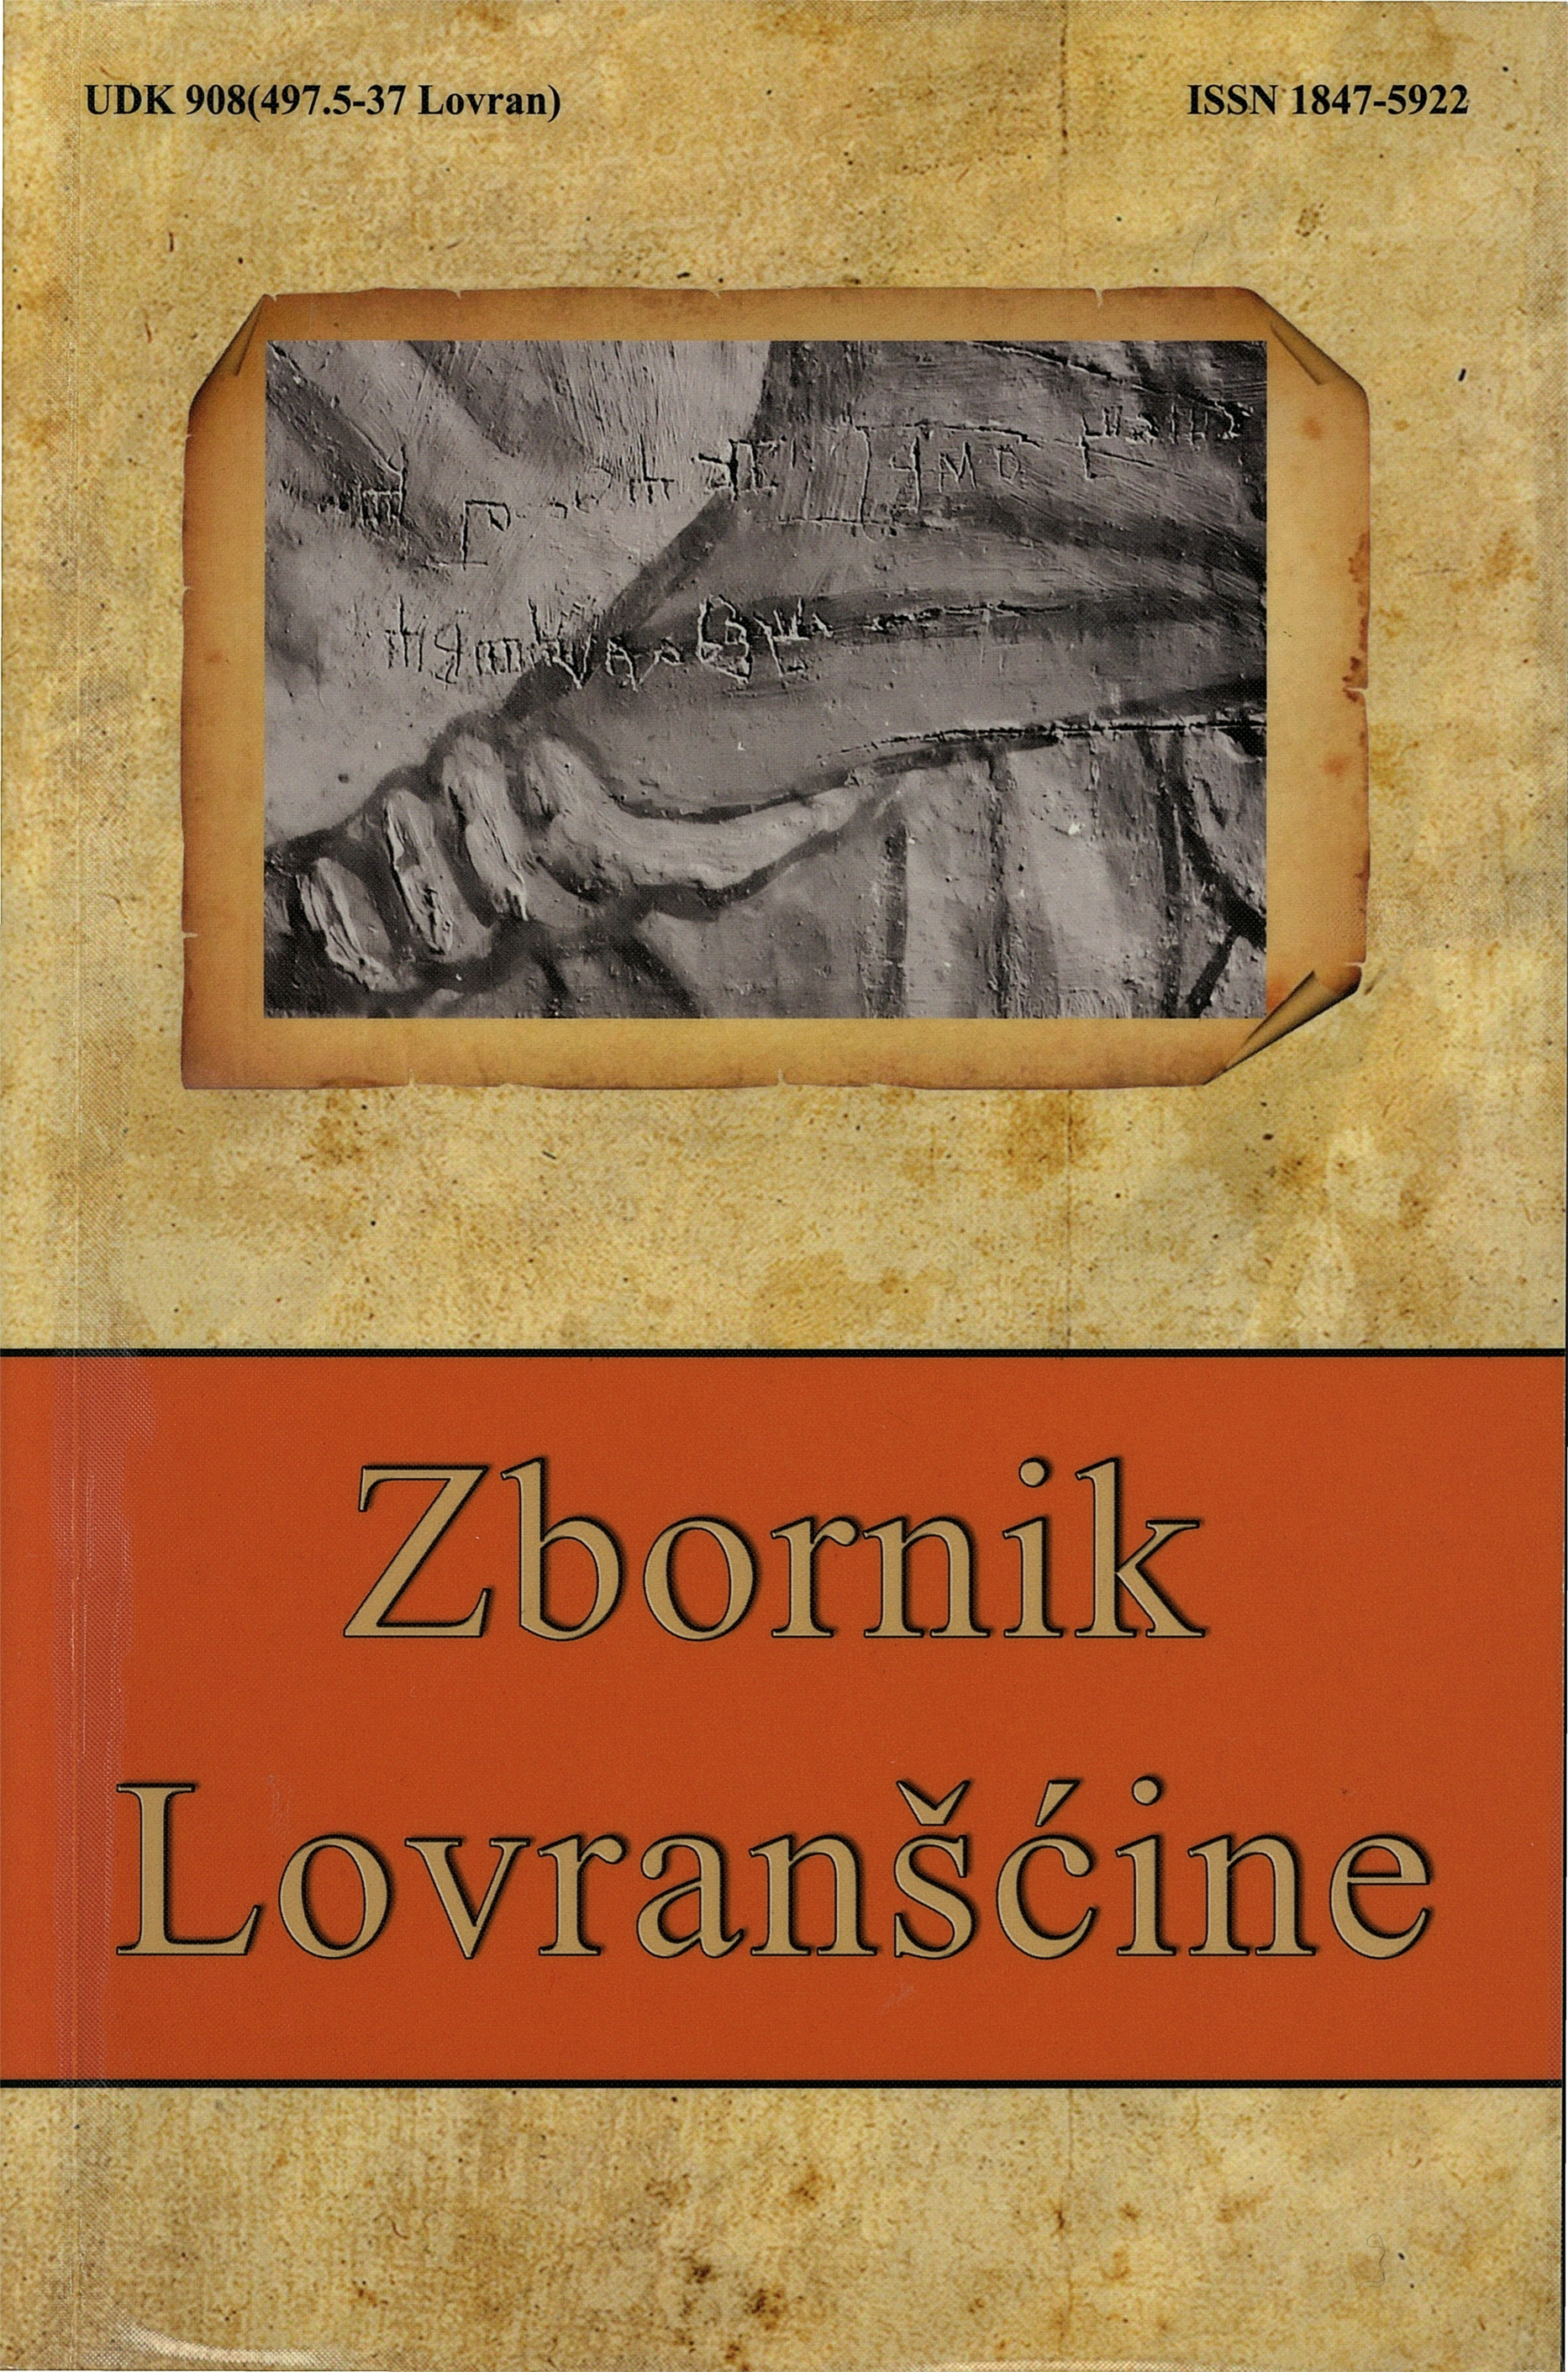 Italianisms in the "Kvaderna kapitula lovranskoga" Cover Image